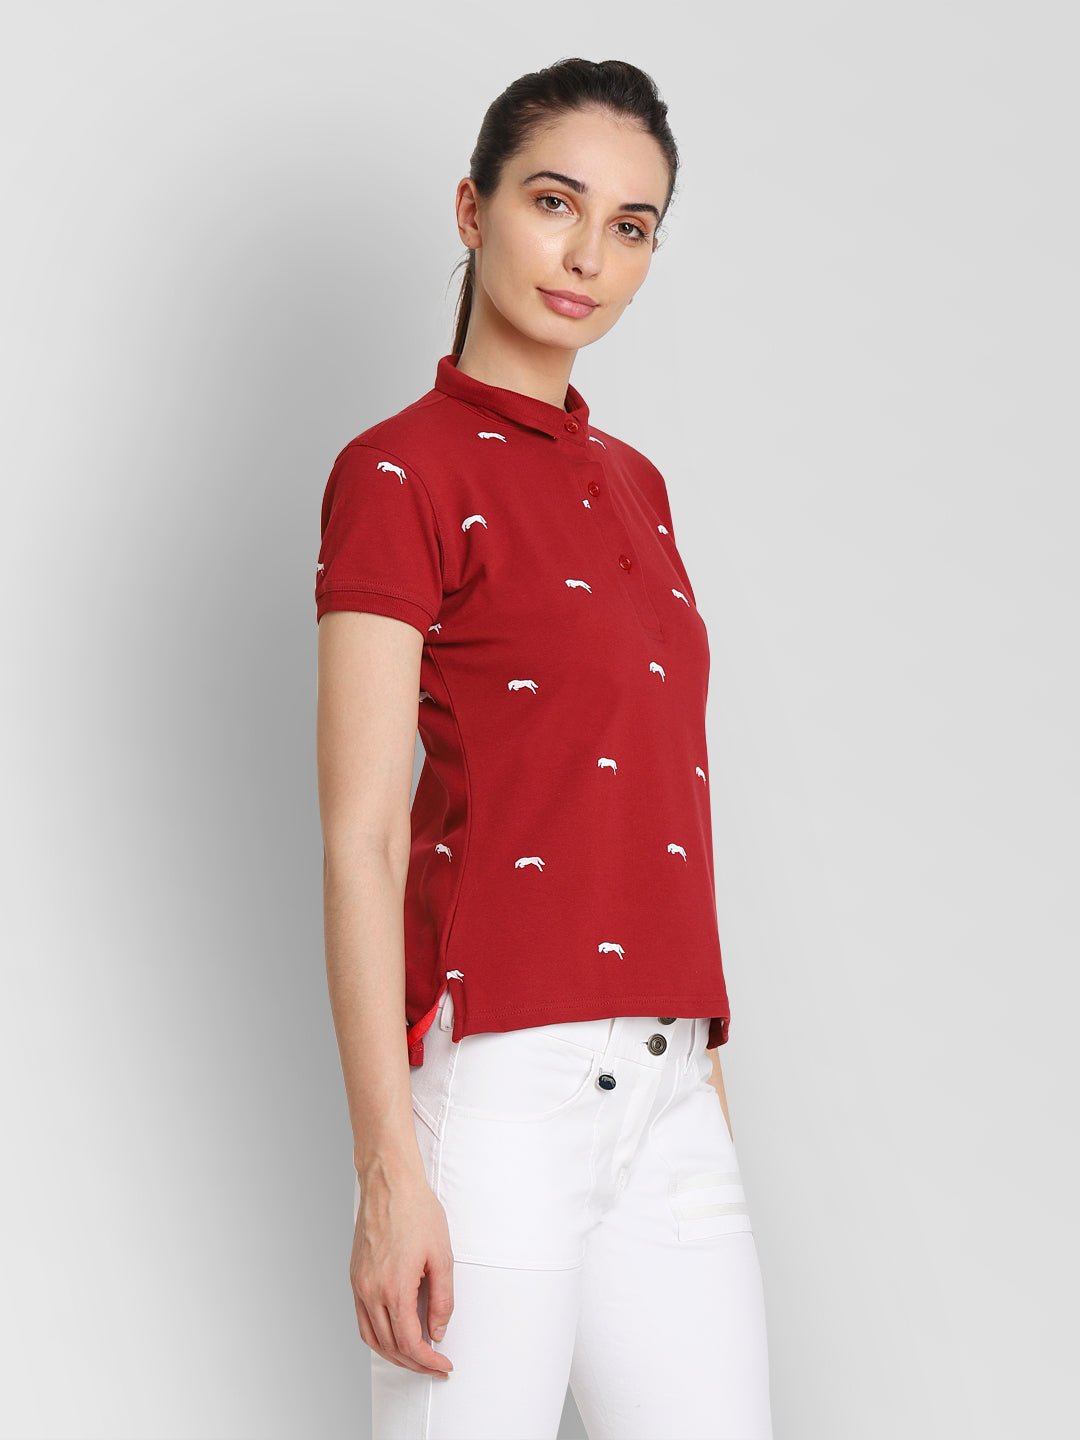 red collar shirt womens